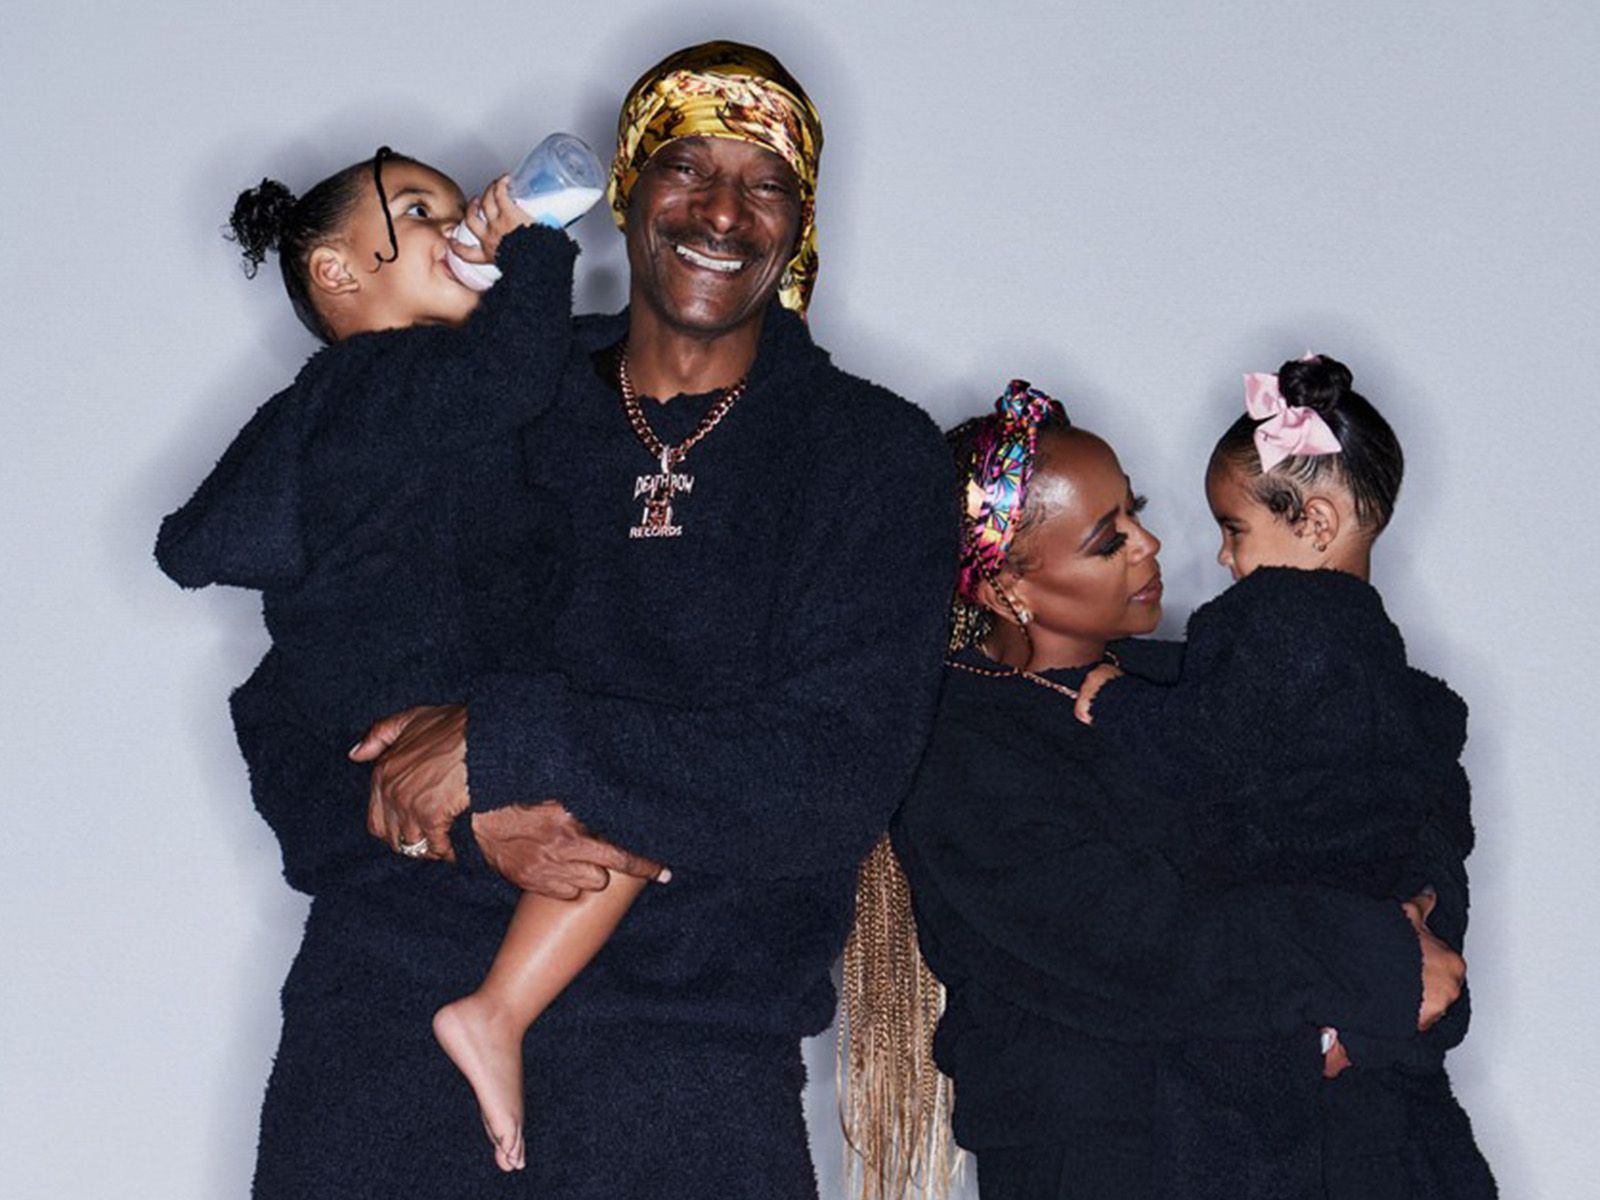 Snoop Dogg protagoniza junto a su familia la campaña navideña de Skims